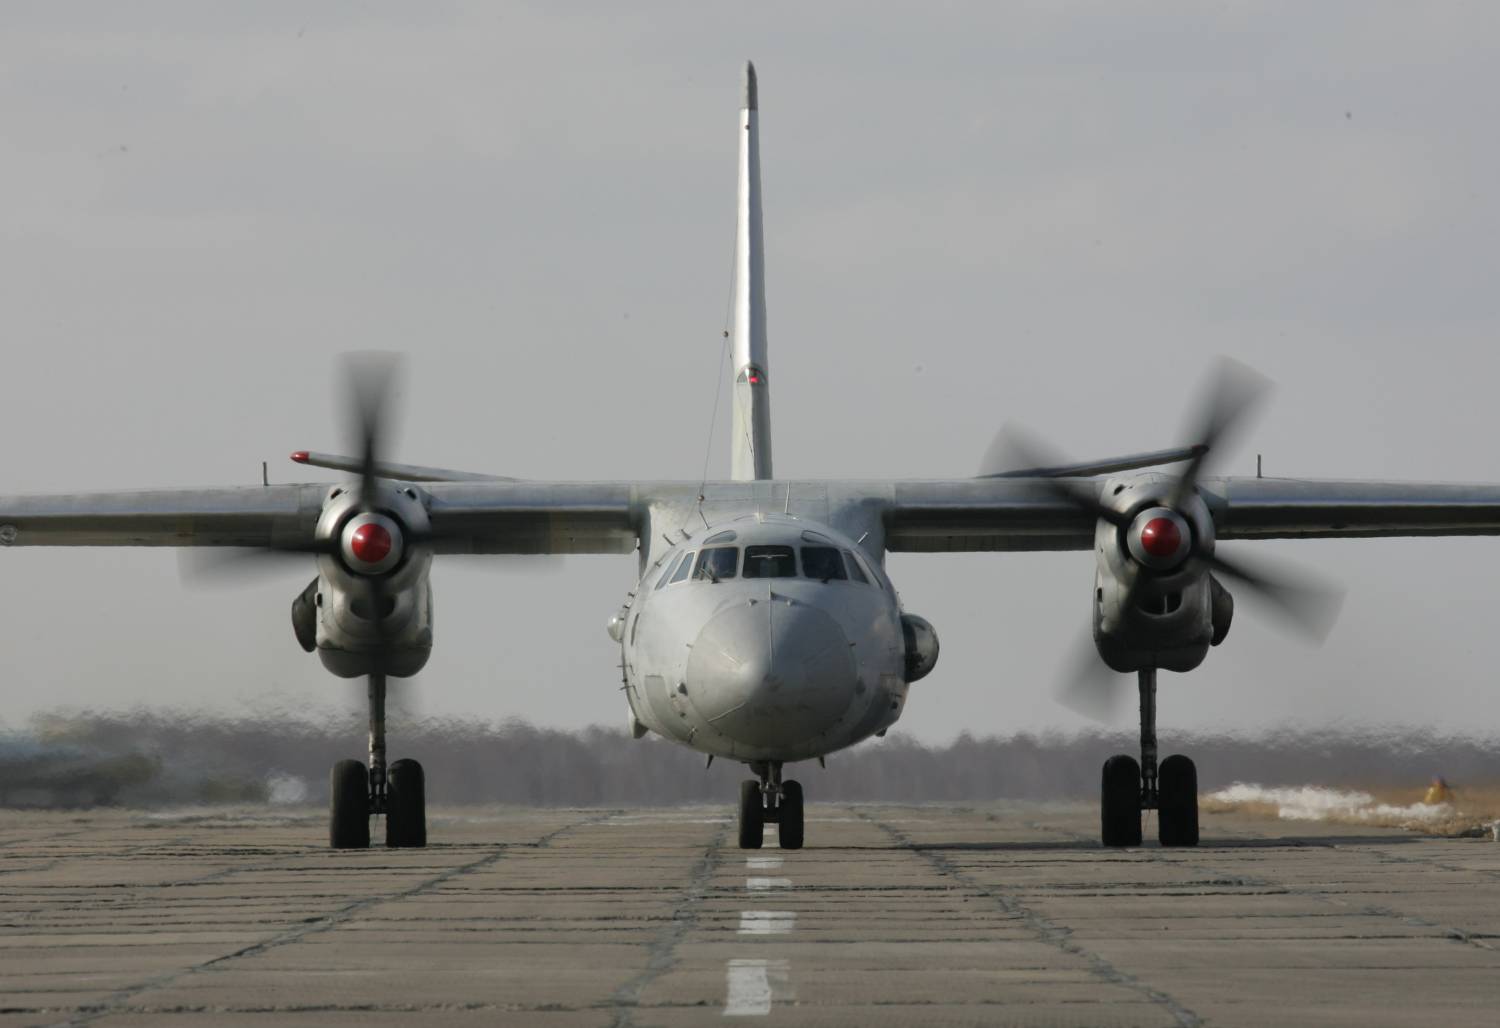 Ռուսաստանում օդանավ է անհետացել. ինչ ուղղությամբ էր թռիչք իրականացնում